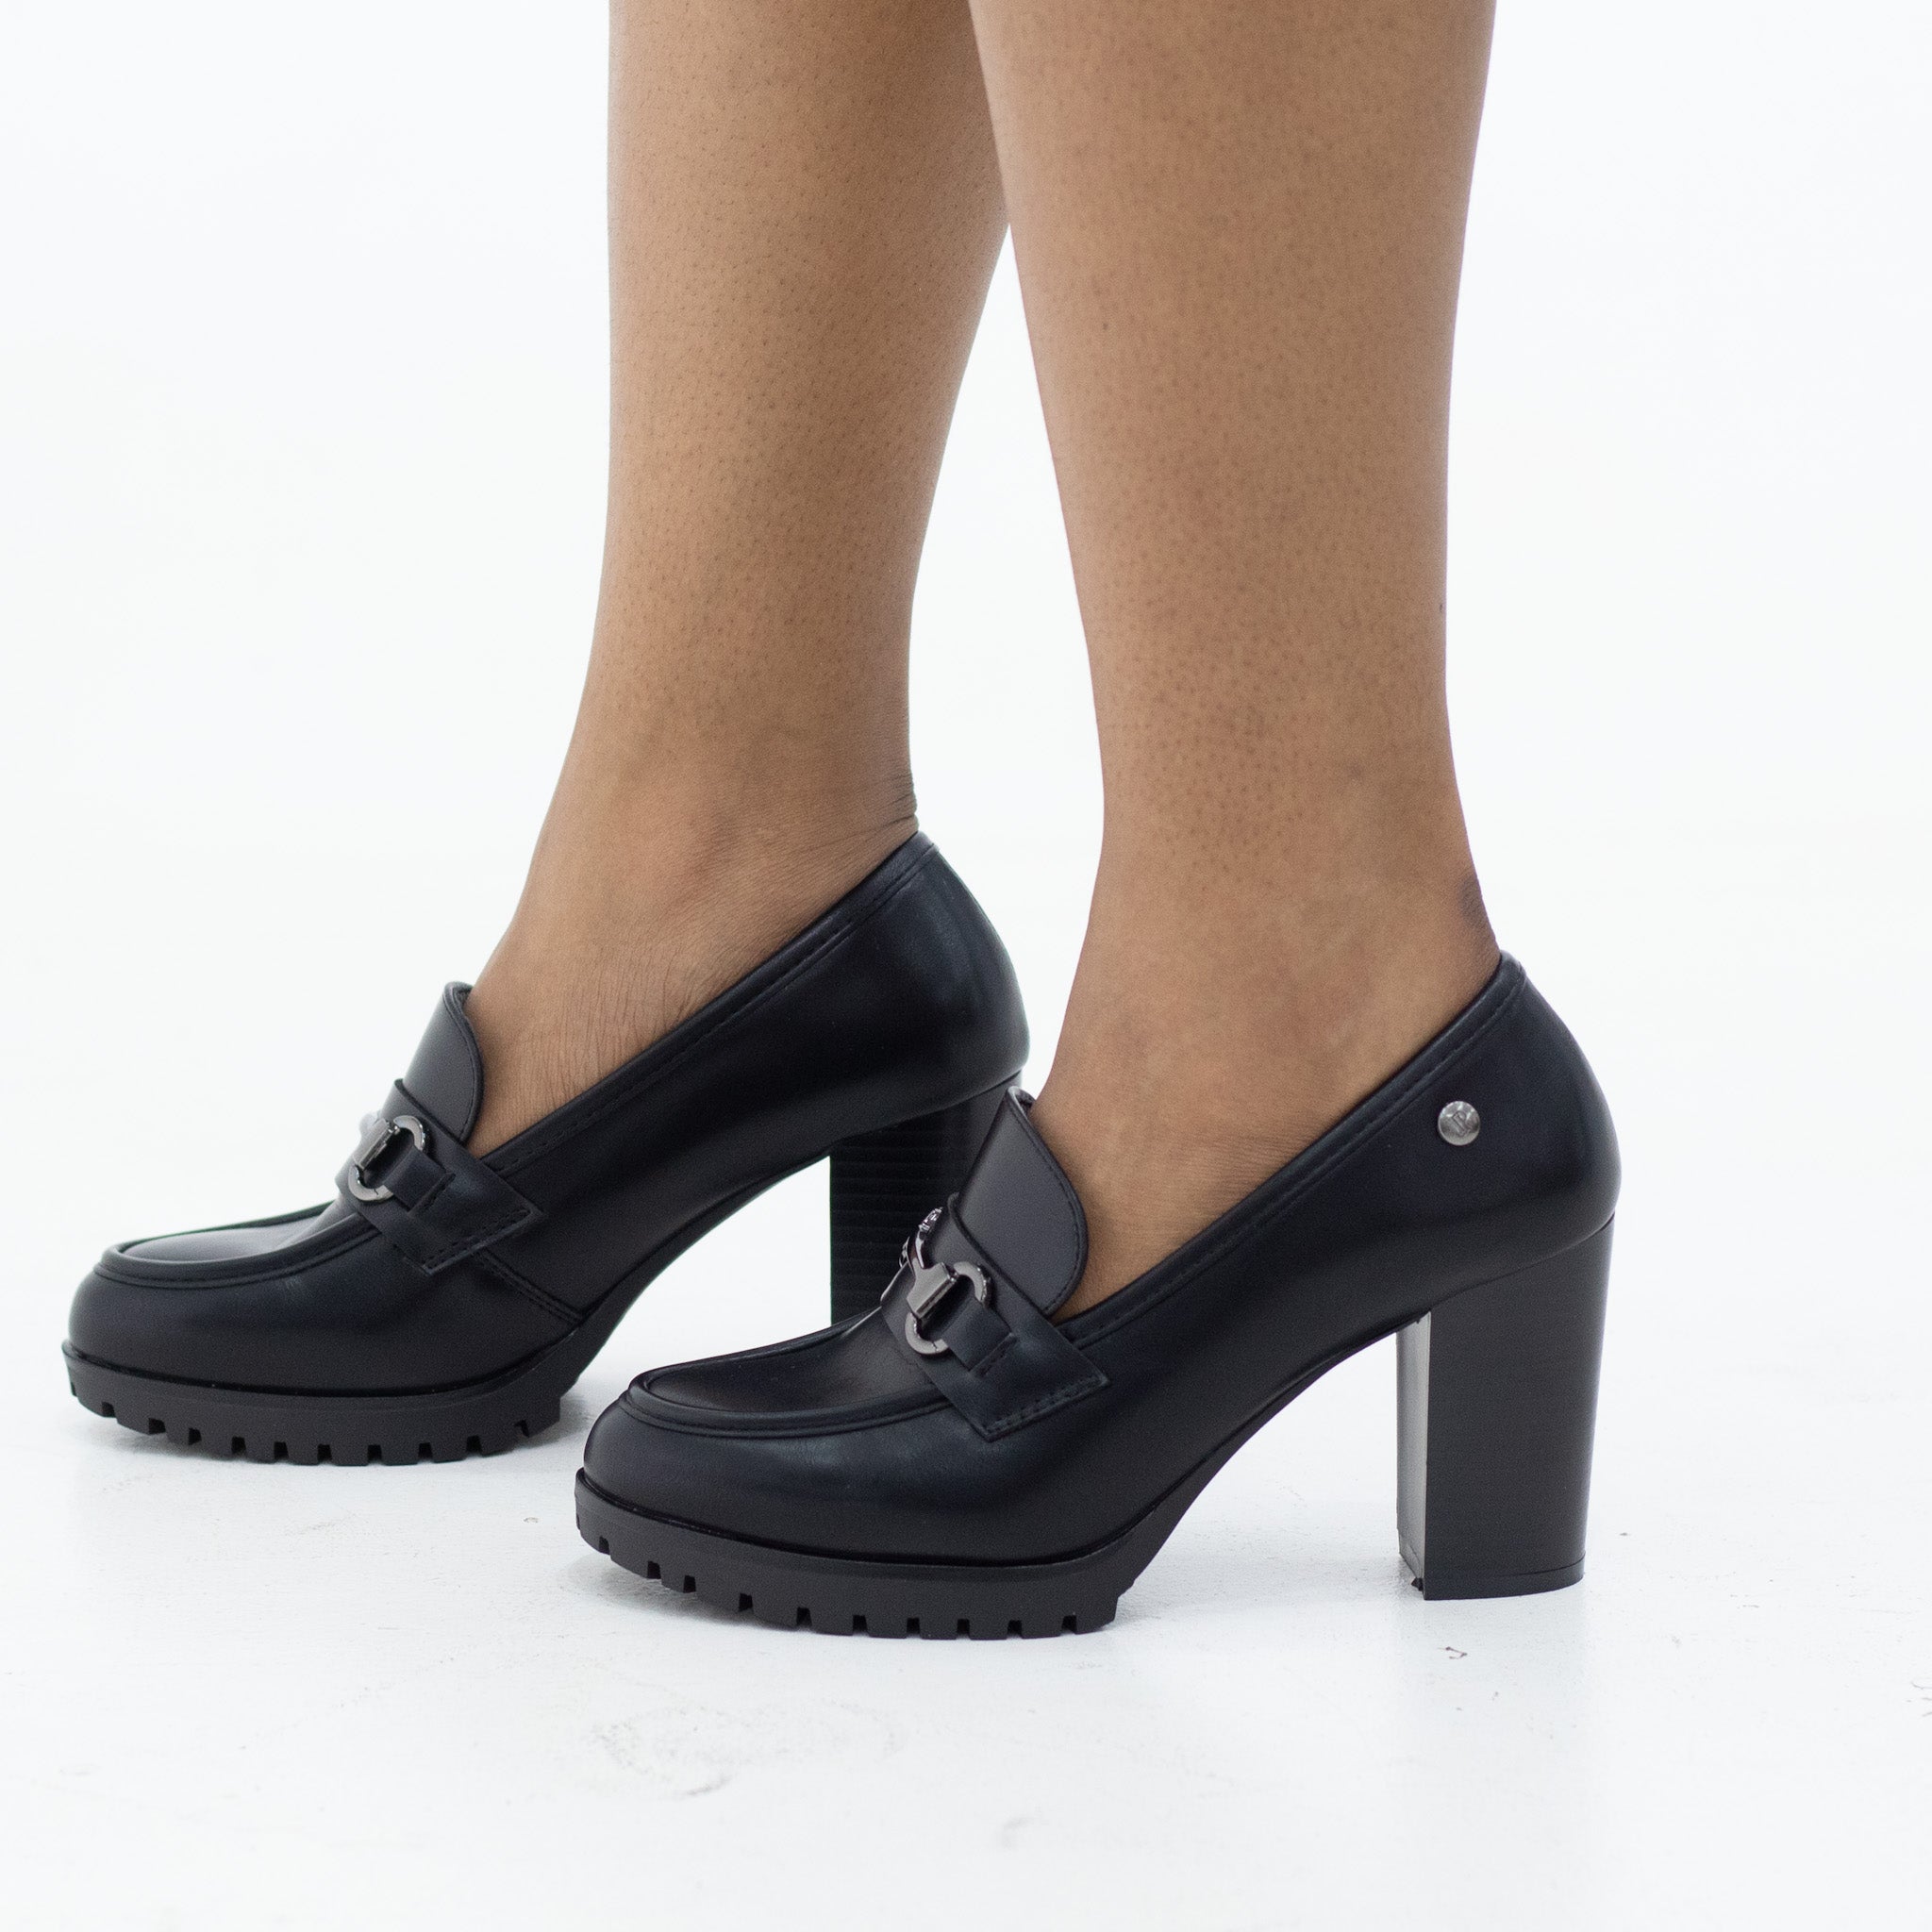 Norisa broque on a 8.5cm heel black